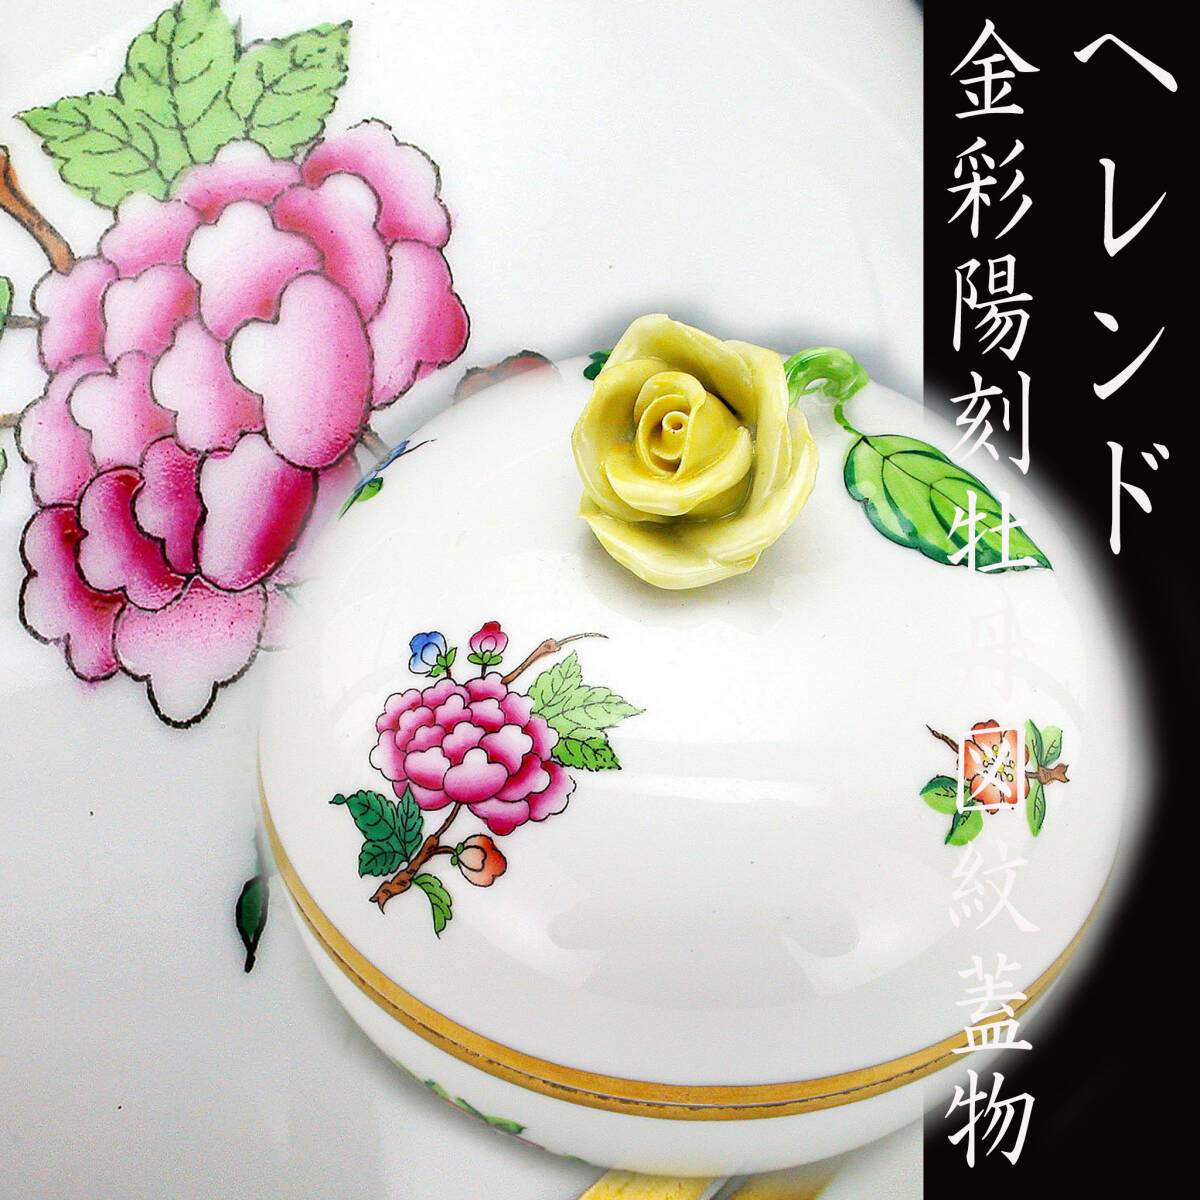 OLD ヘレンド ・金彩薔薇摘牡丹図紋蓋物の画像1